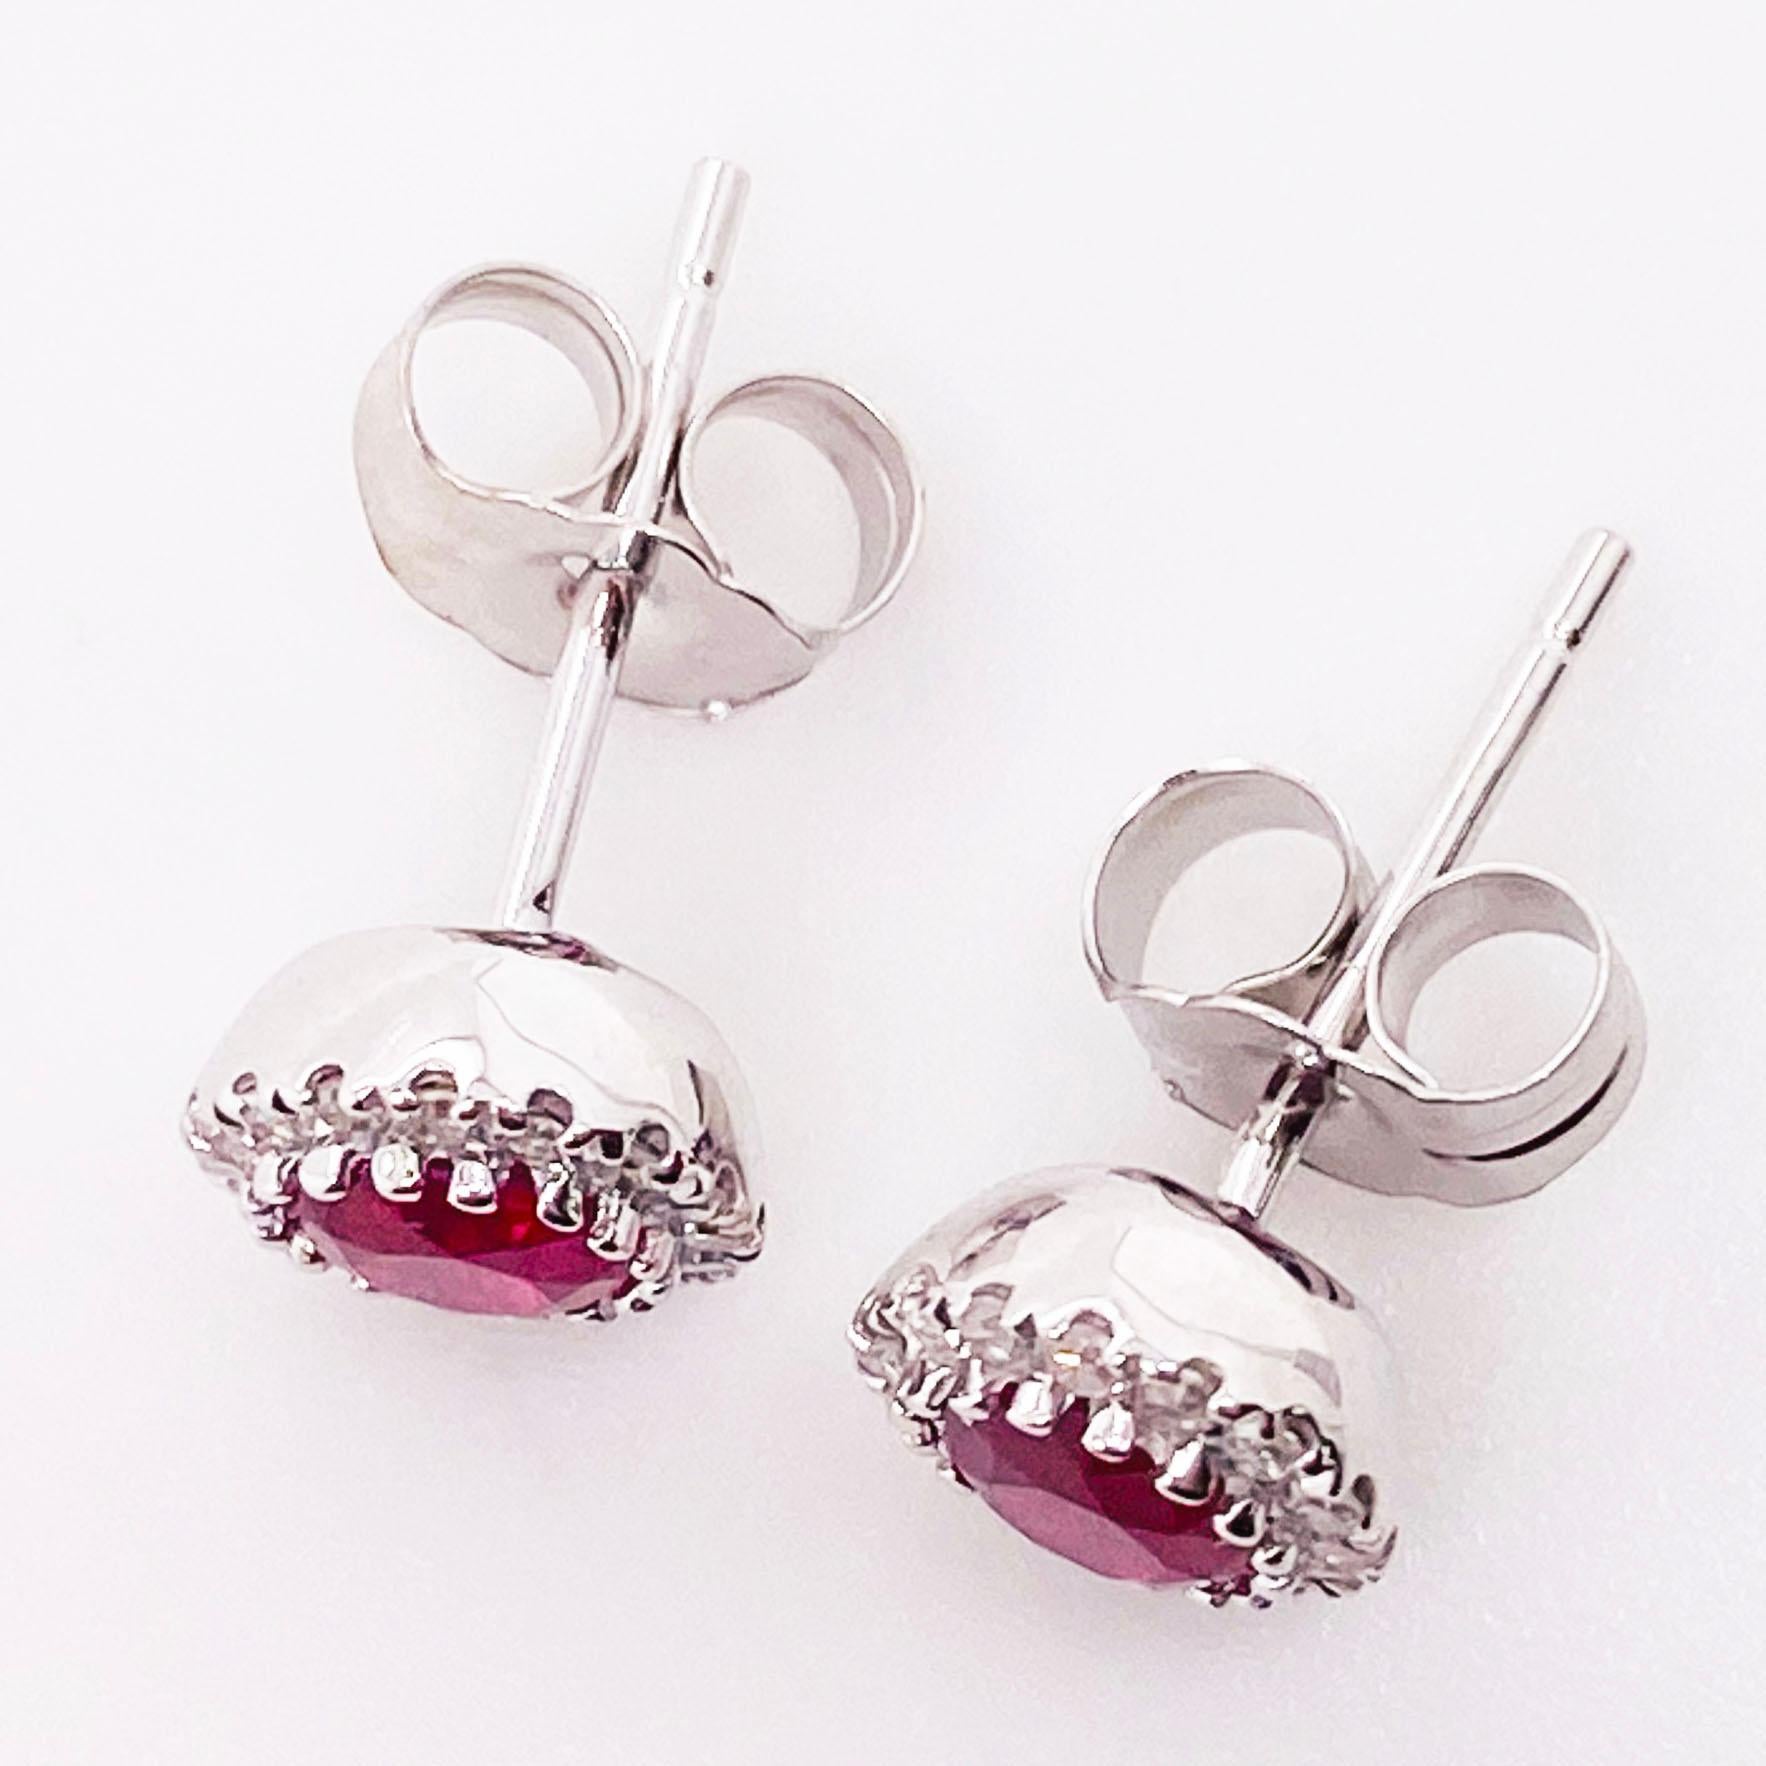 Boucles d'oreilles classiques à halo en rubis rouge et diamants, parfaites pour toutes les occasions ! Les boucles d'oreilles en pierre rubis sont composées d'un rubis rond rouge véritable serti dans un halo de diamants. Les rubis sont d'un rouge